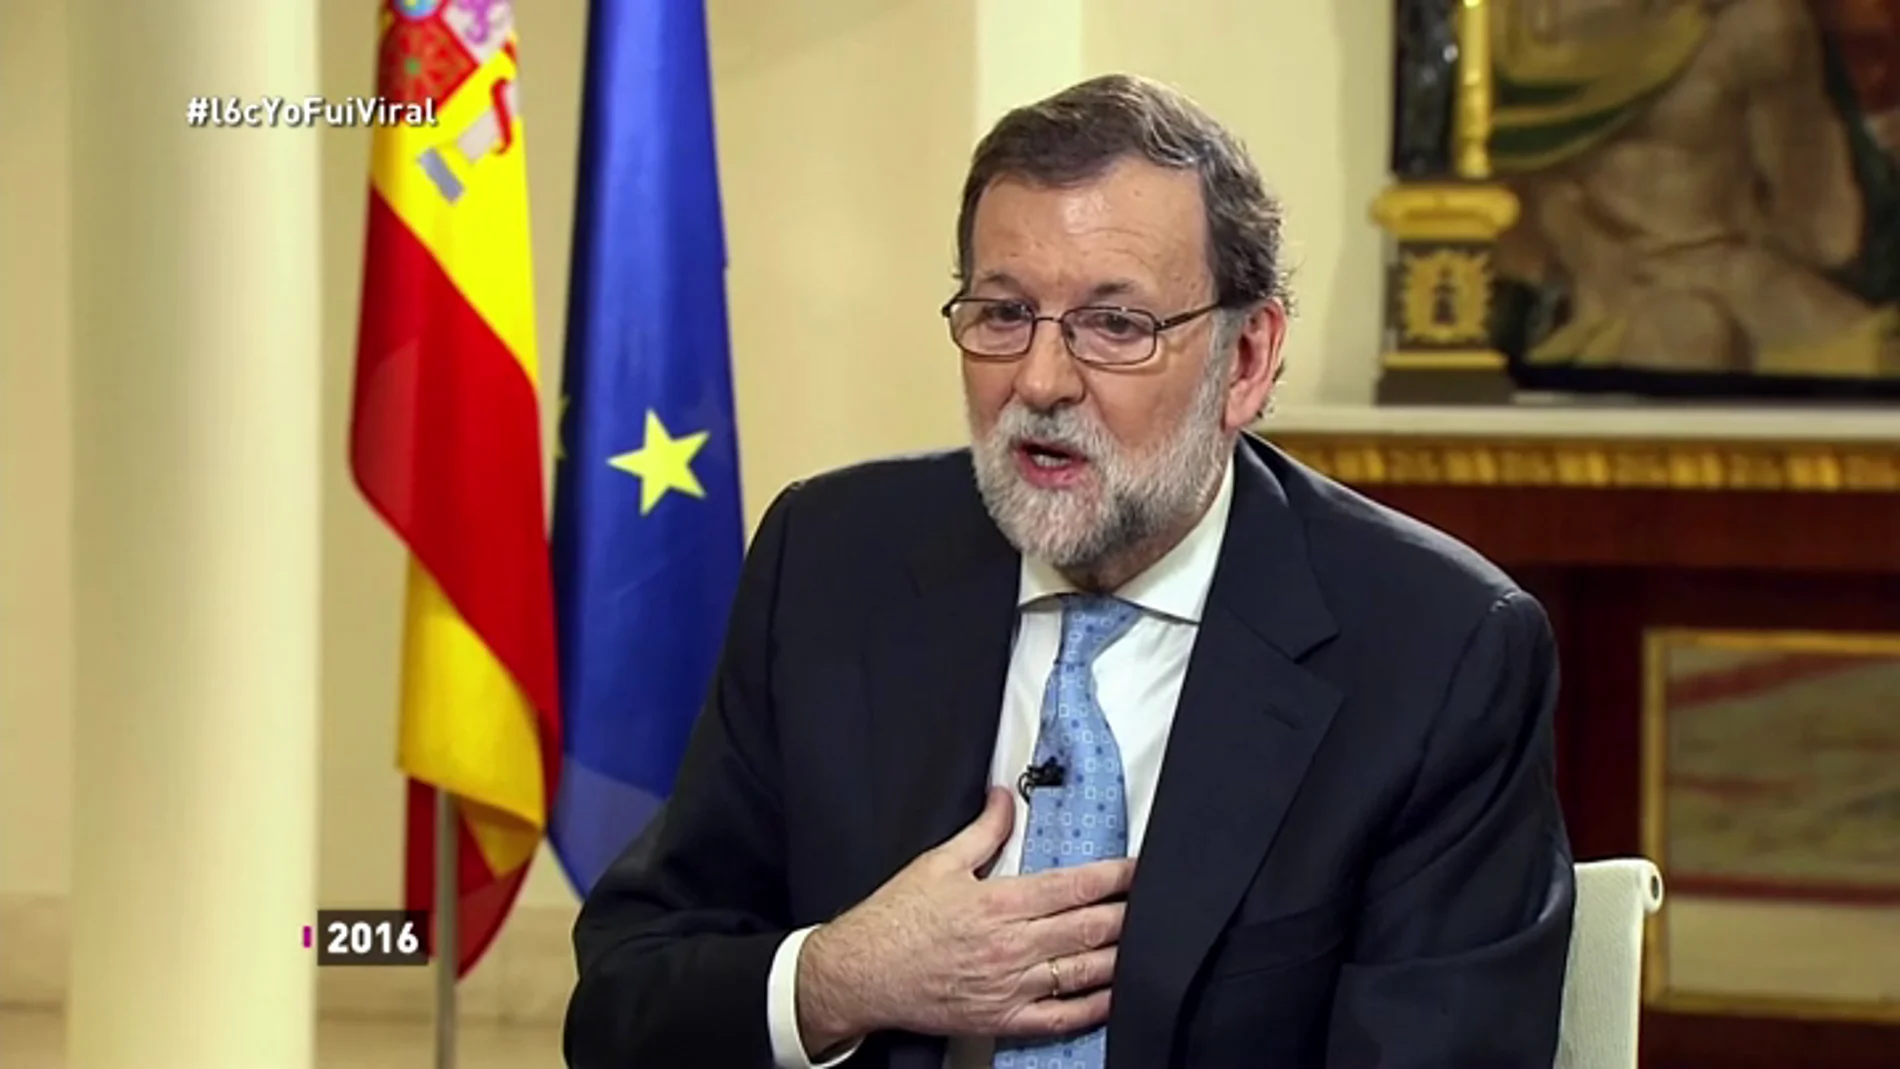 Esclavos del meme y la visibilidad en Internet: Rajoy y Rufián, las dos caras de la viralidad en política